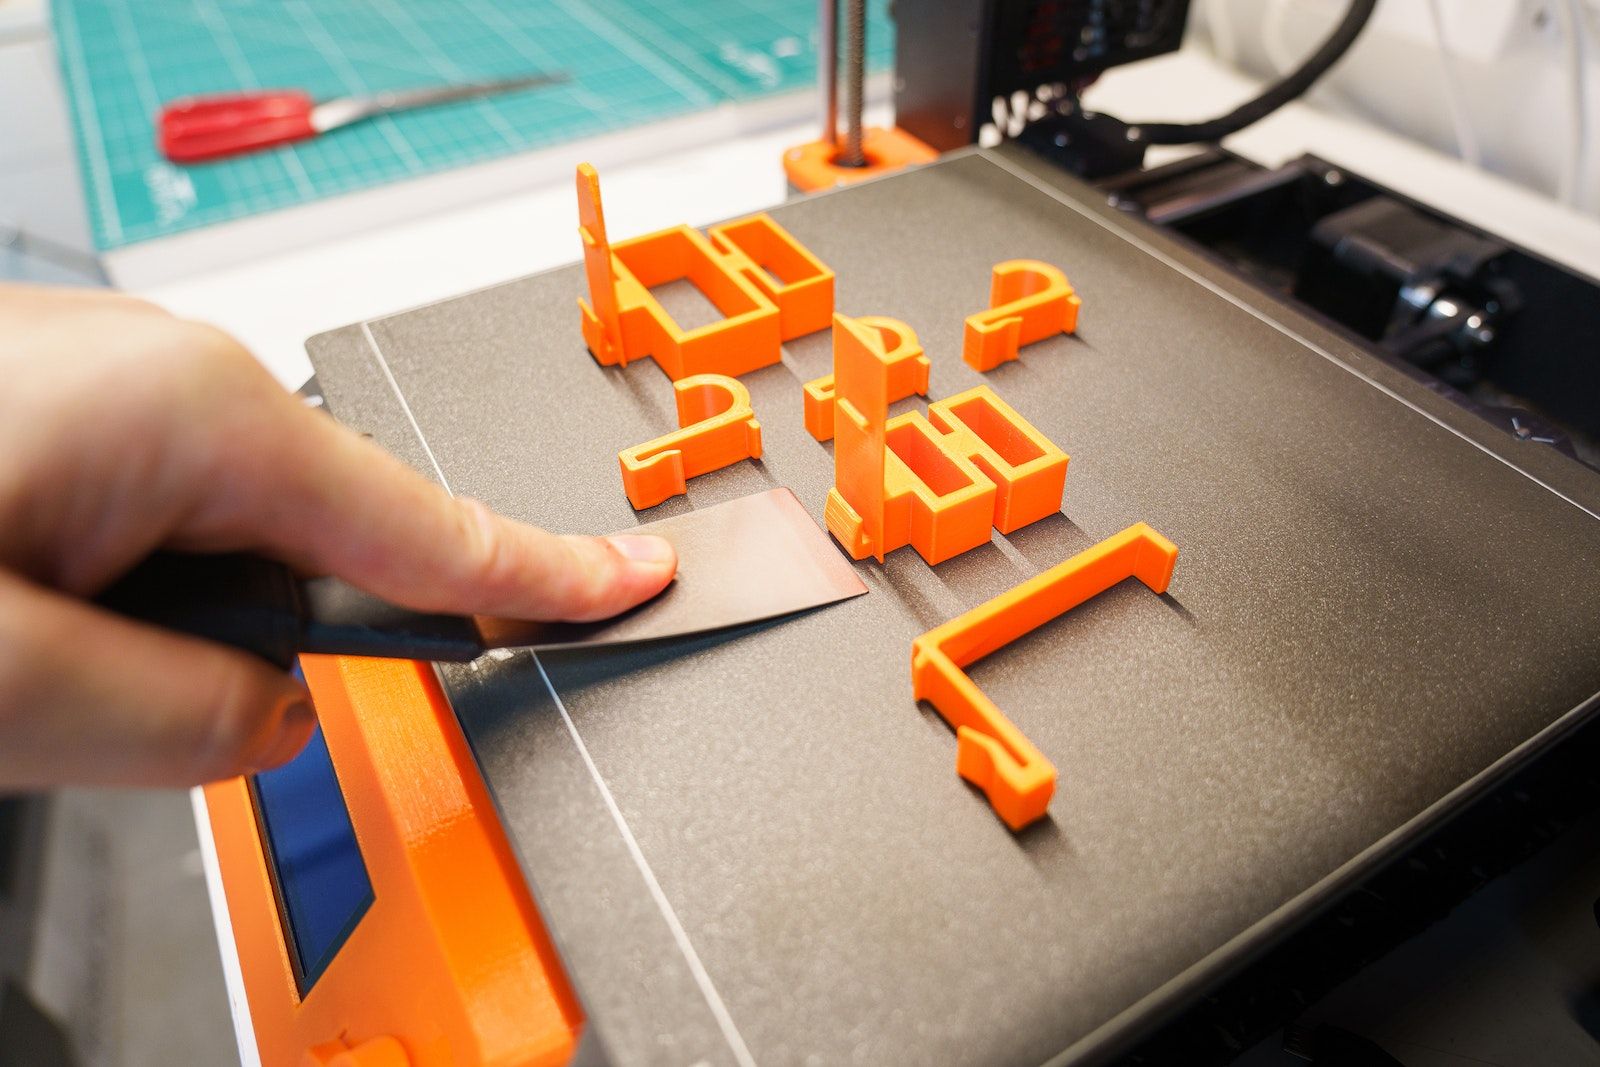 Best 3D printer 2023: FDM or resin?